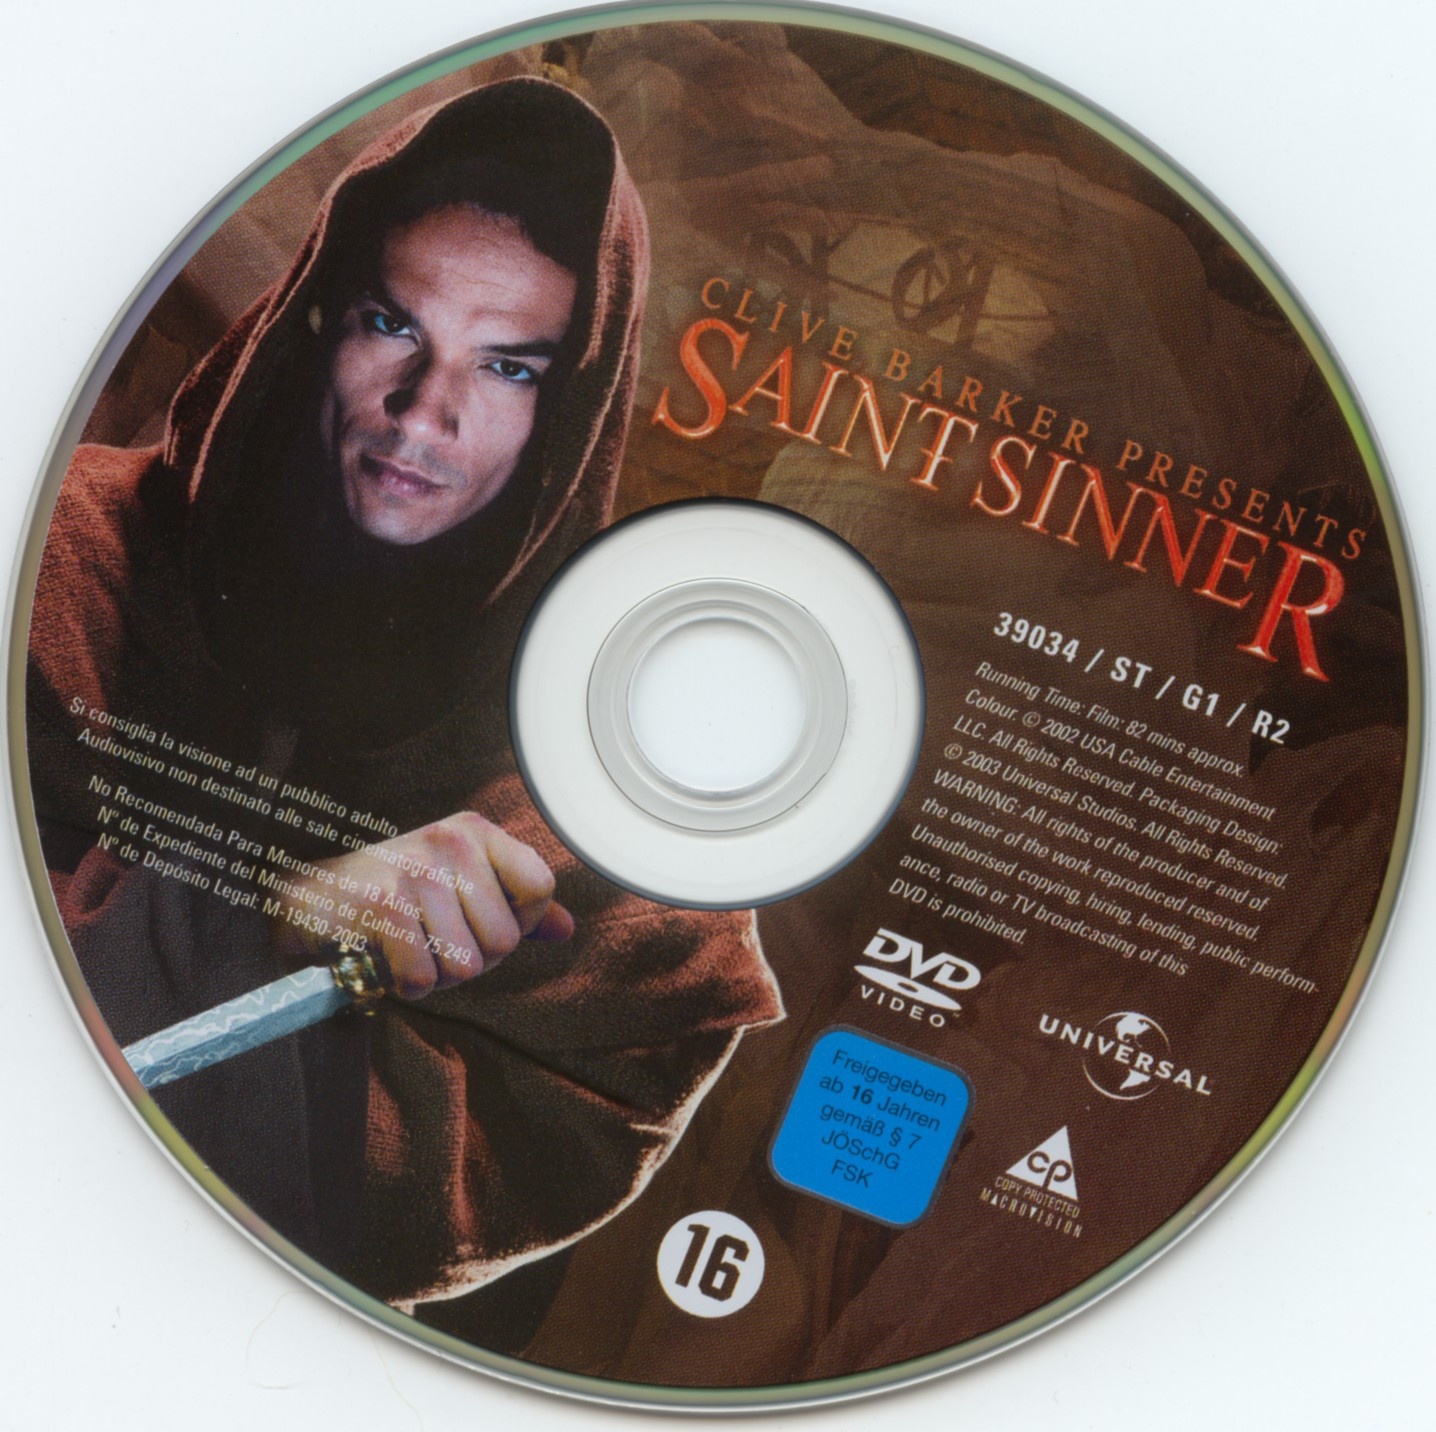 Saint sinner